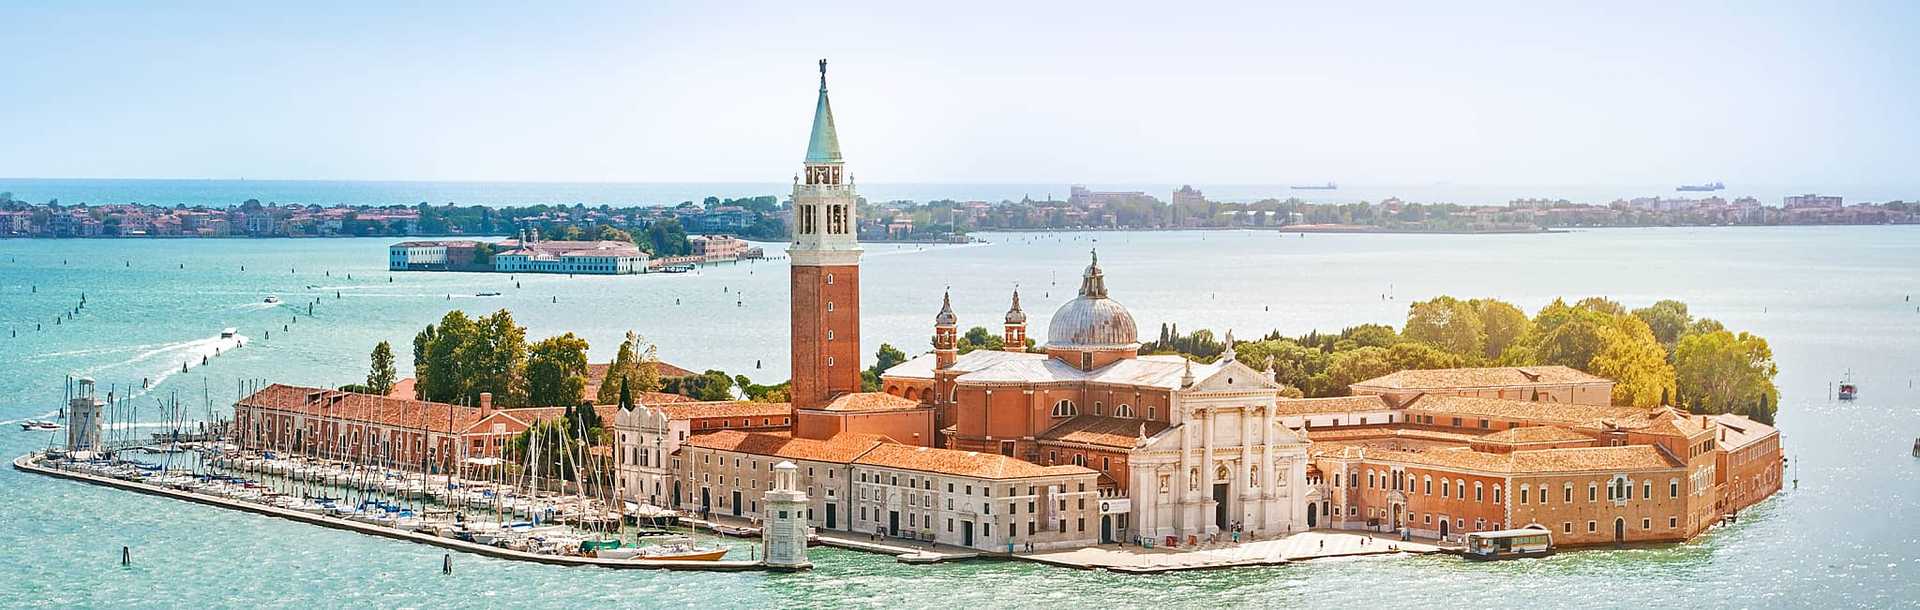 Aerial view of San Giorgio Maggiore island in Venice, Italy.